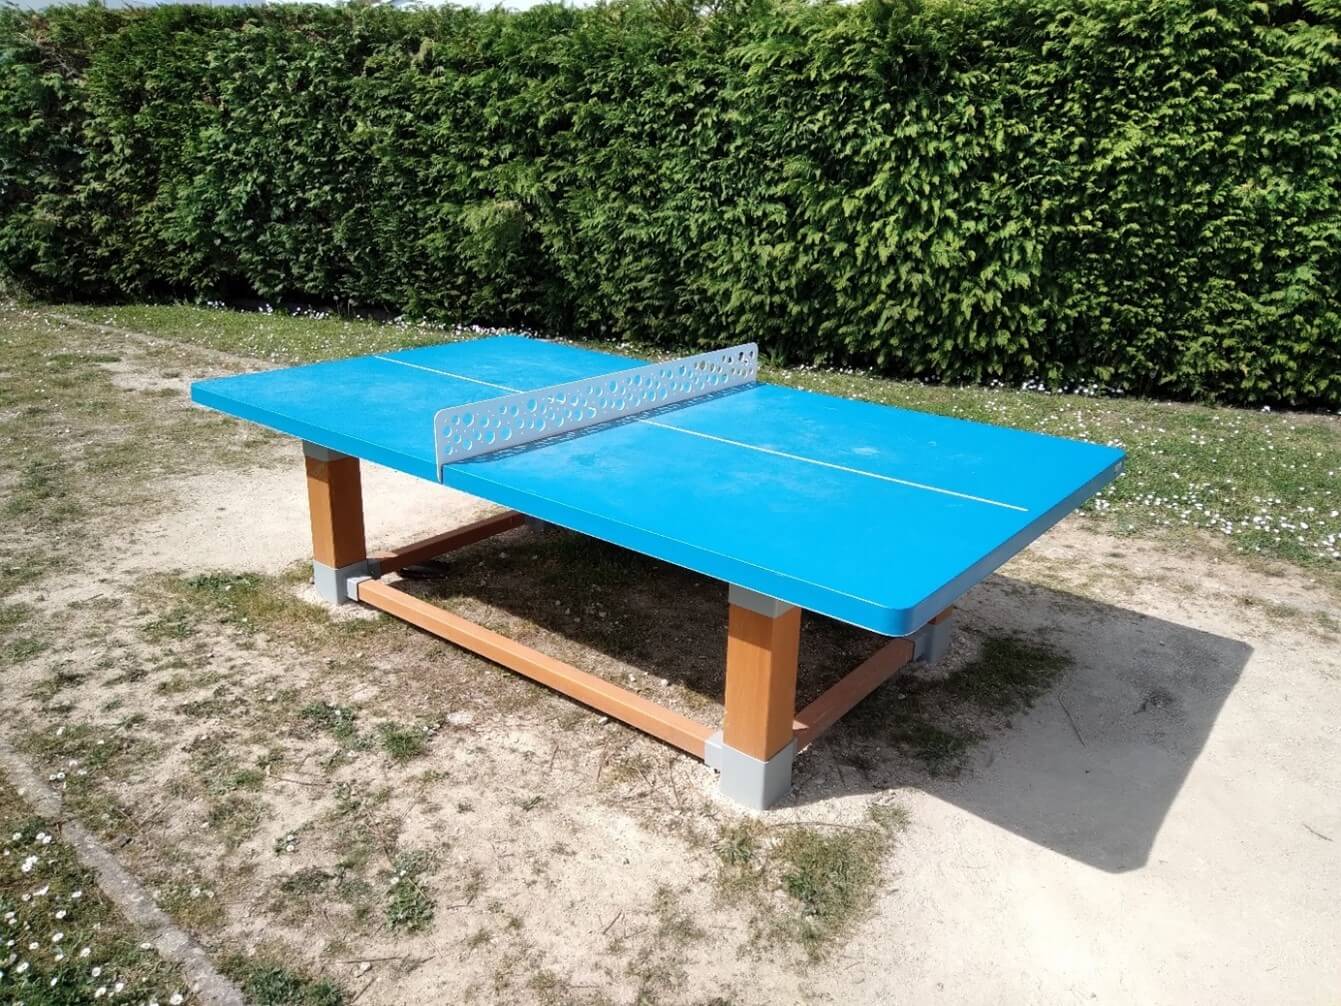 Table de tennis de table de couleur bleue, avec des pieds en bois, une haie est situé proche de la table